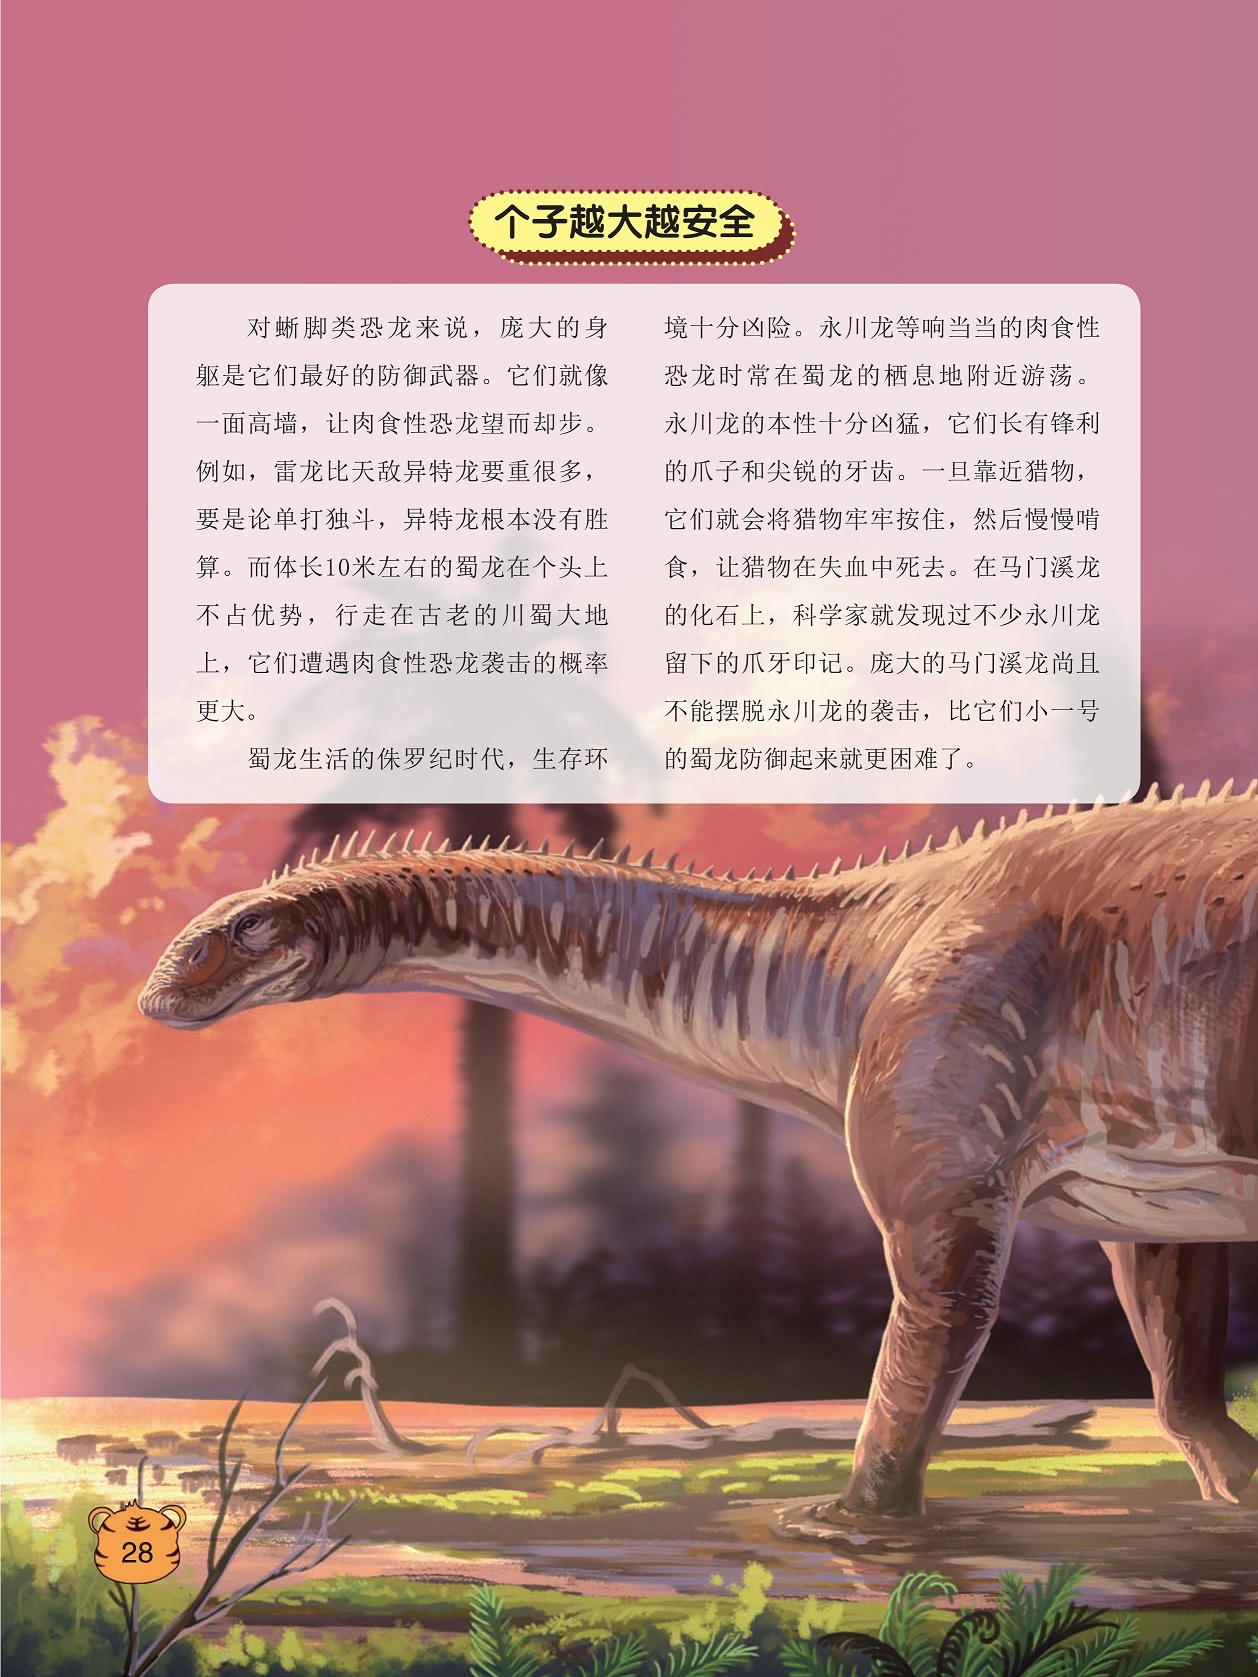 蜀龙生活的侏罗纪时代,科学家就发现过不少永川龙留下的爪牙印记